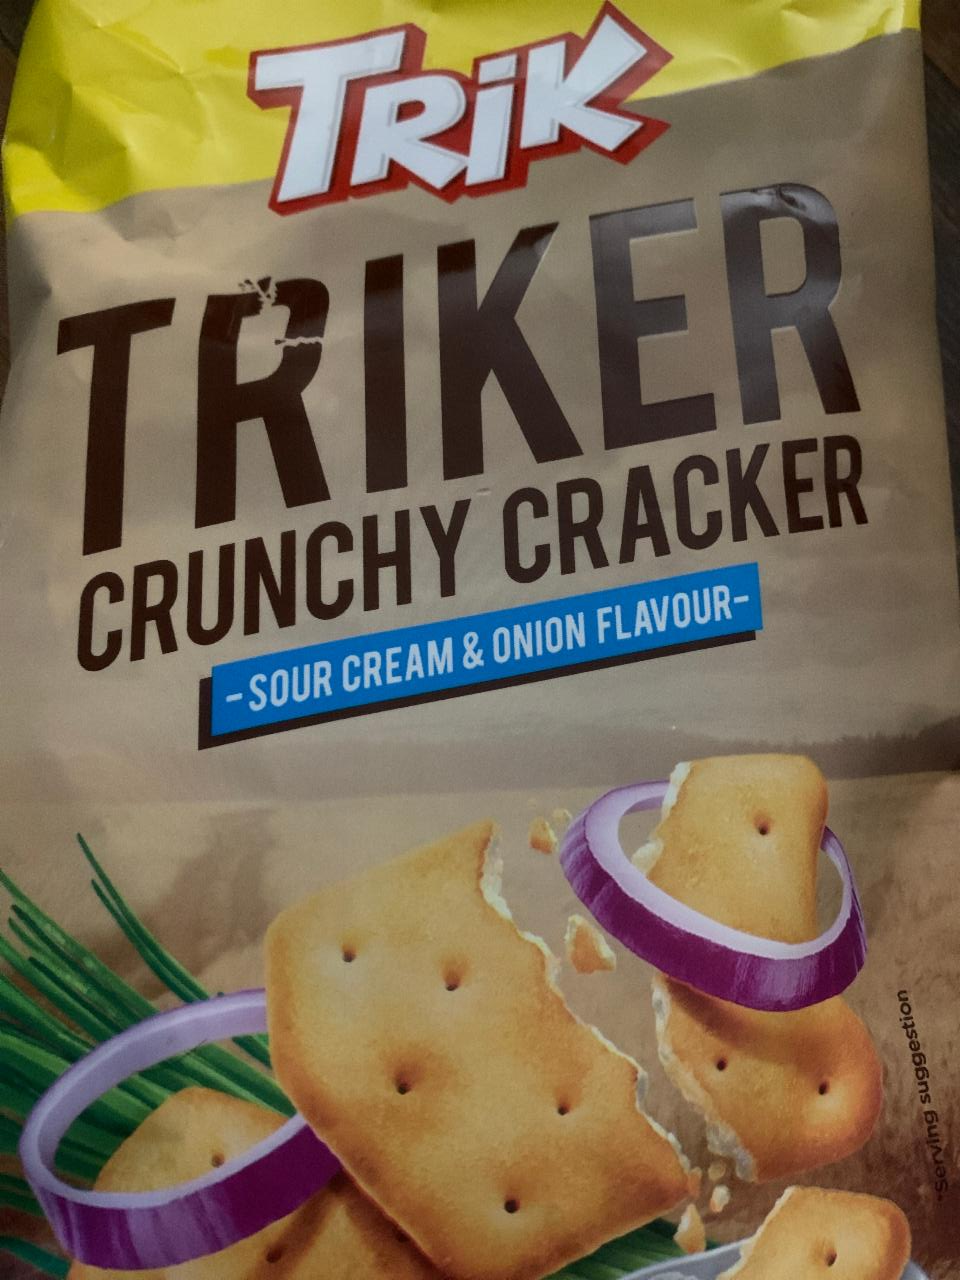 Fotografie - Triker Crunchy Cracker Sour Cream & Onion flavour Trik